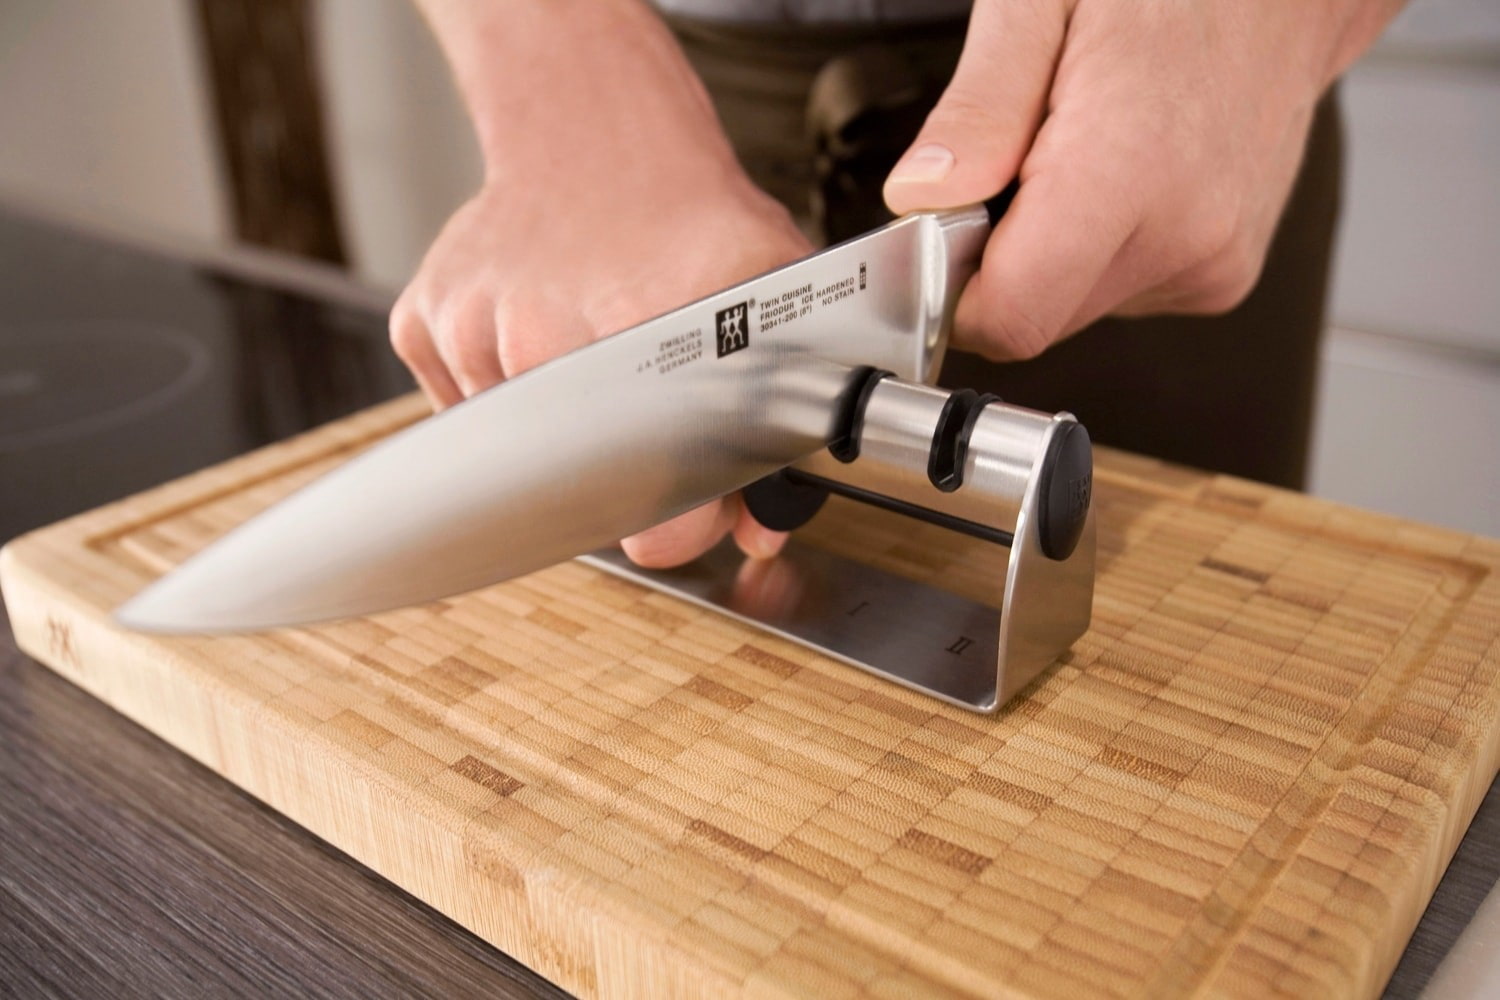  правильно точить ножи бруском в домашних условиях? Правила и другие .